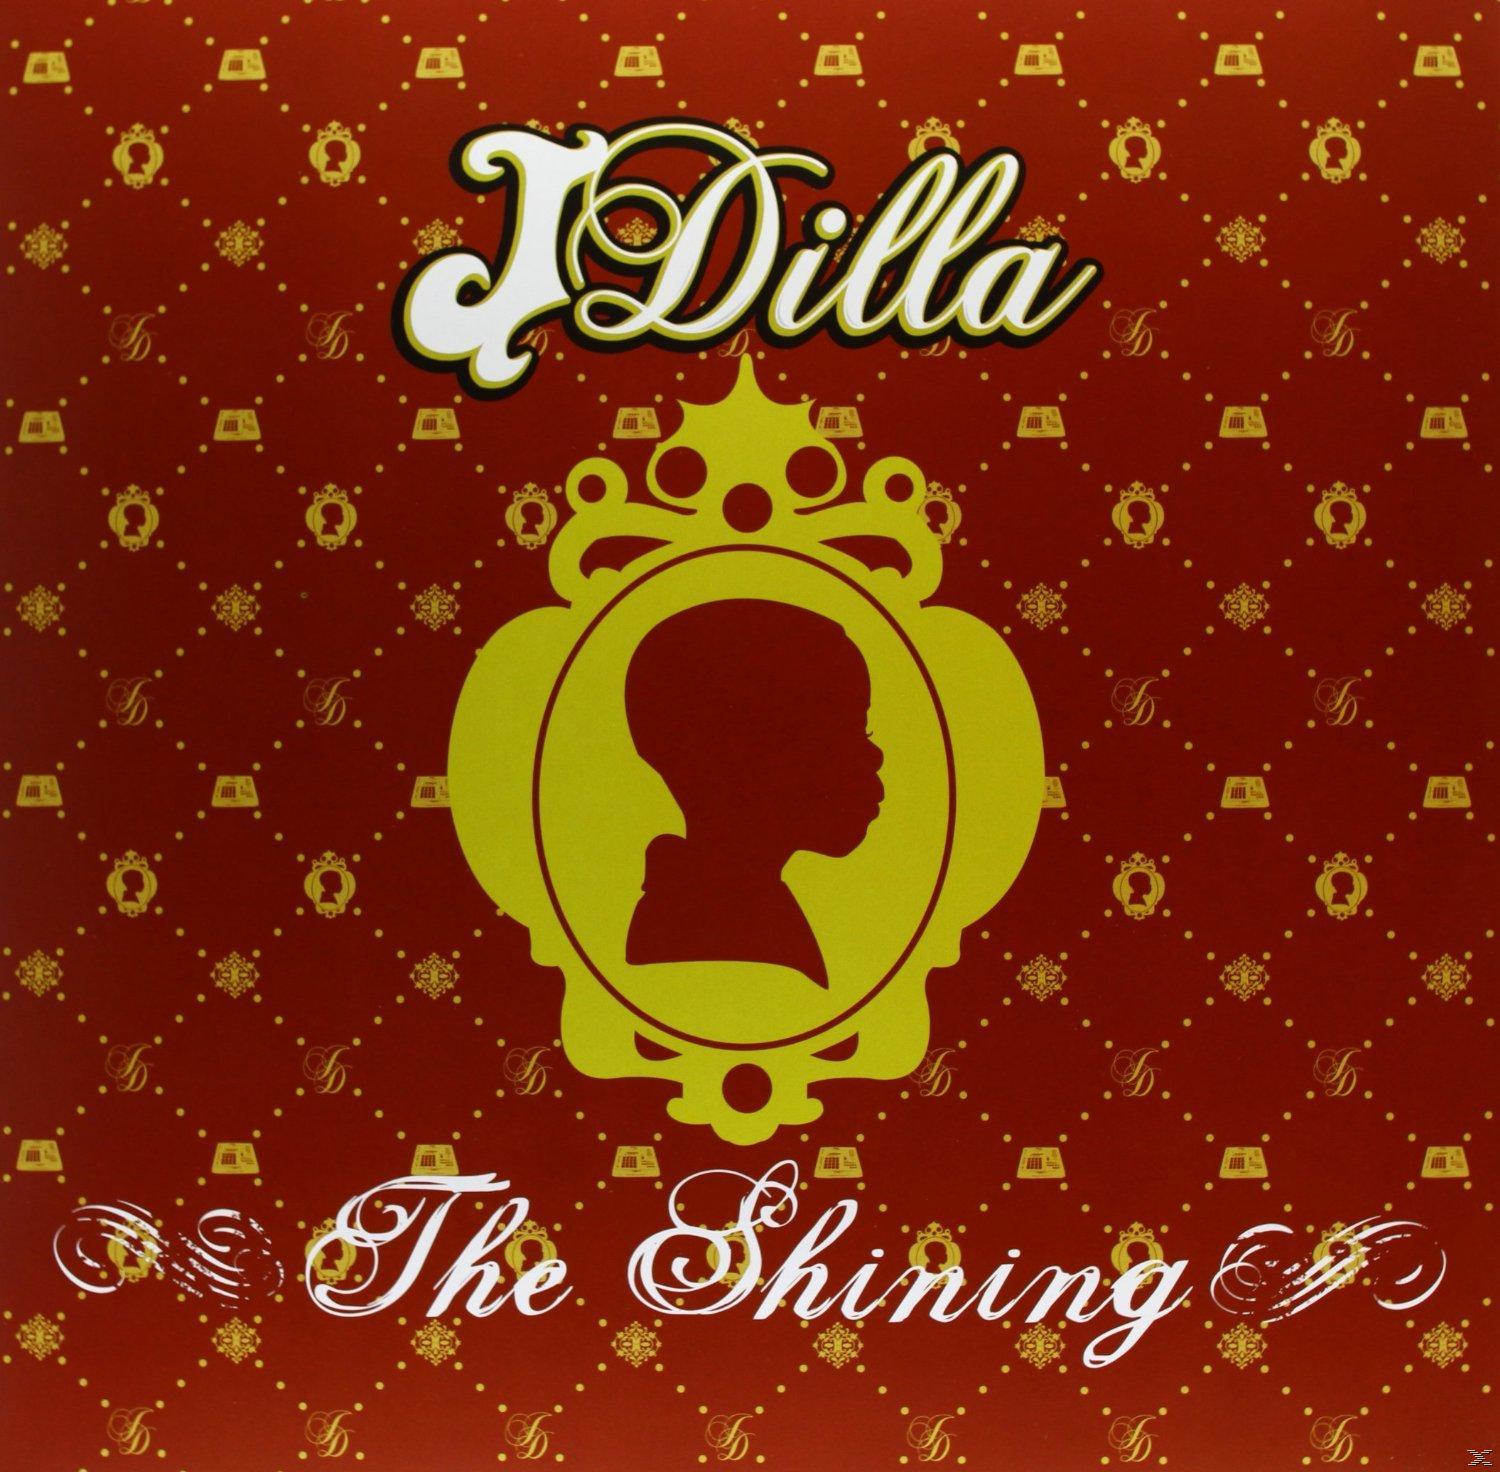 Dee - Jay J (Vinyl) The Aka - Shining Dilla